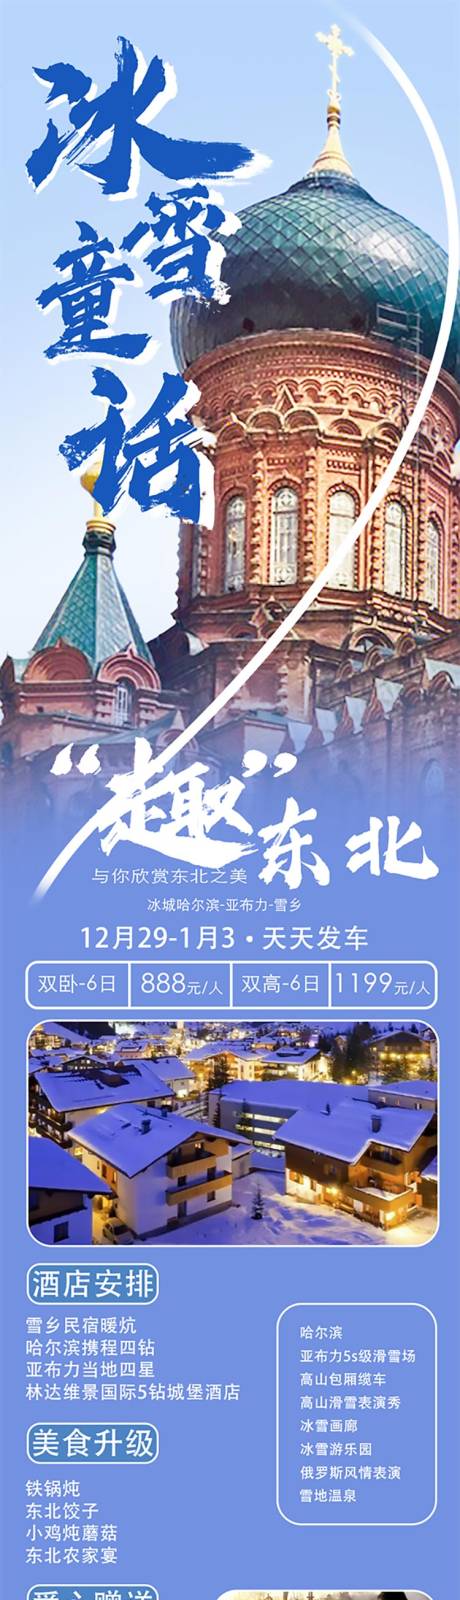 哈尔滨东北旅游海报